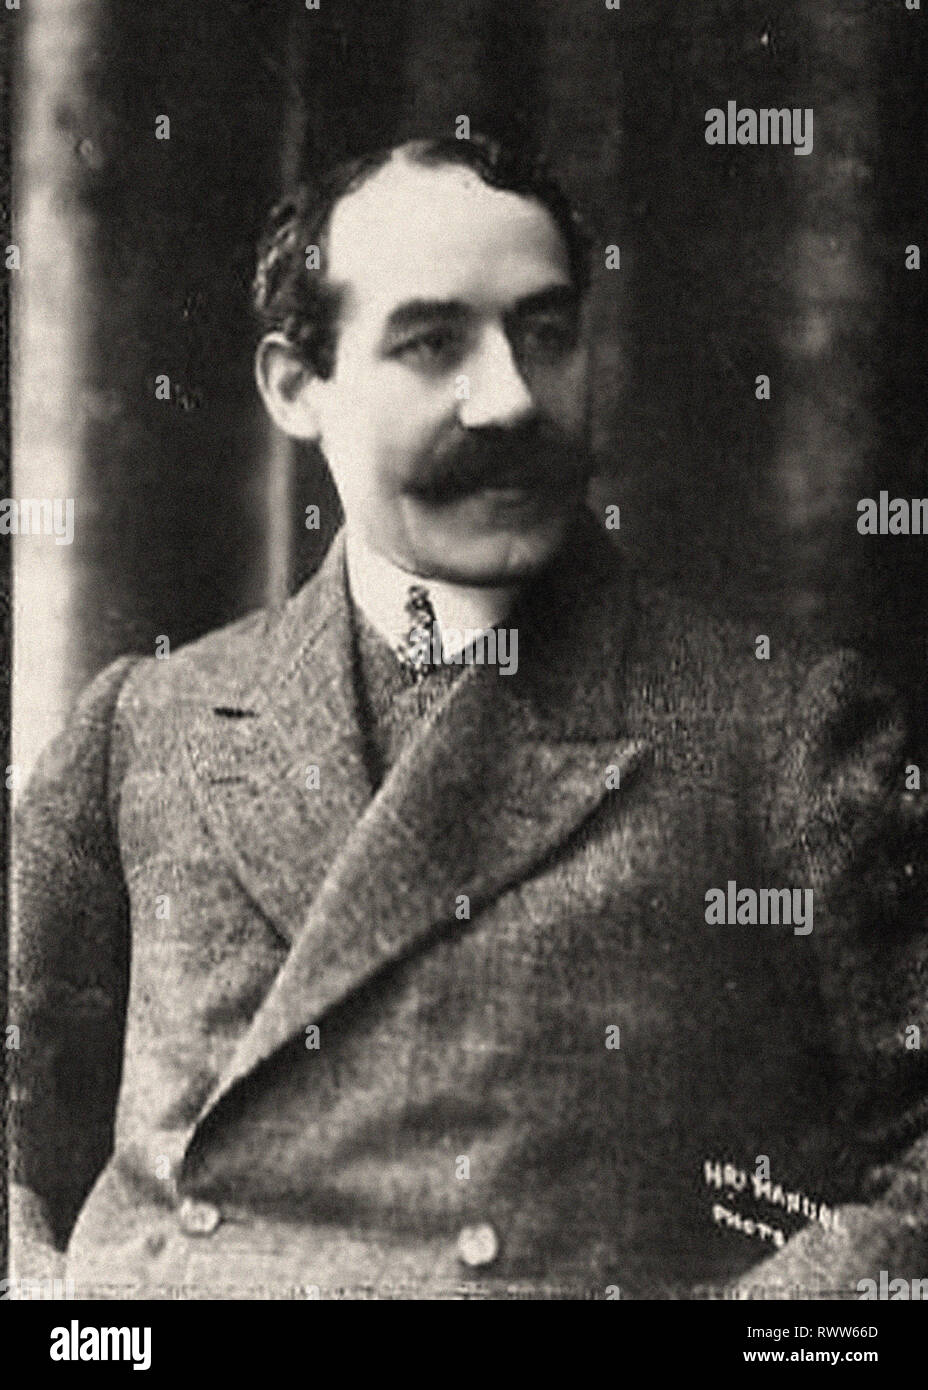 Photographic portrait of Calmettes, André Stock Photo